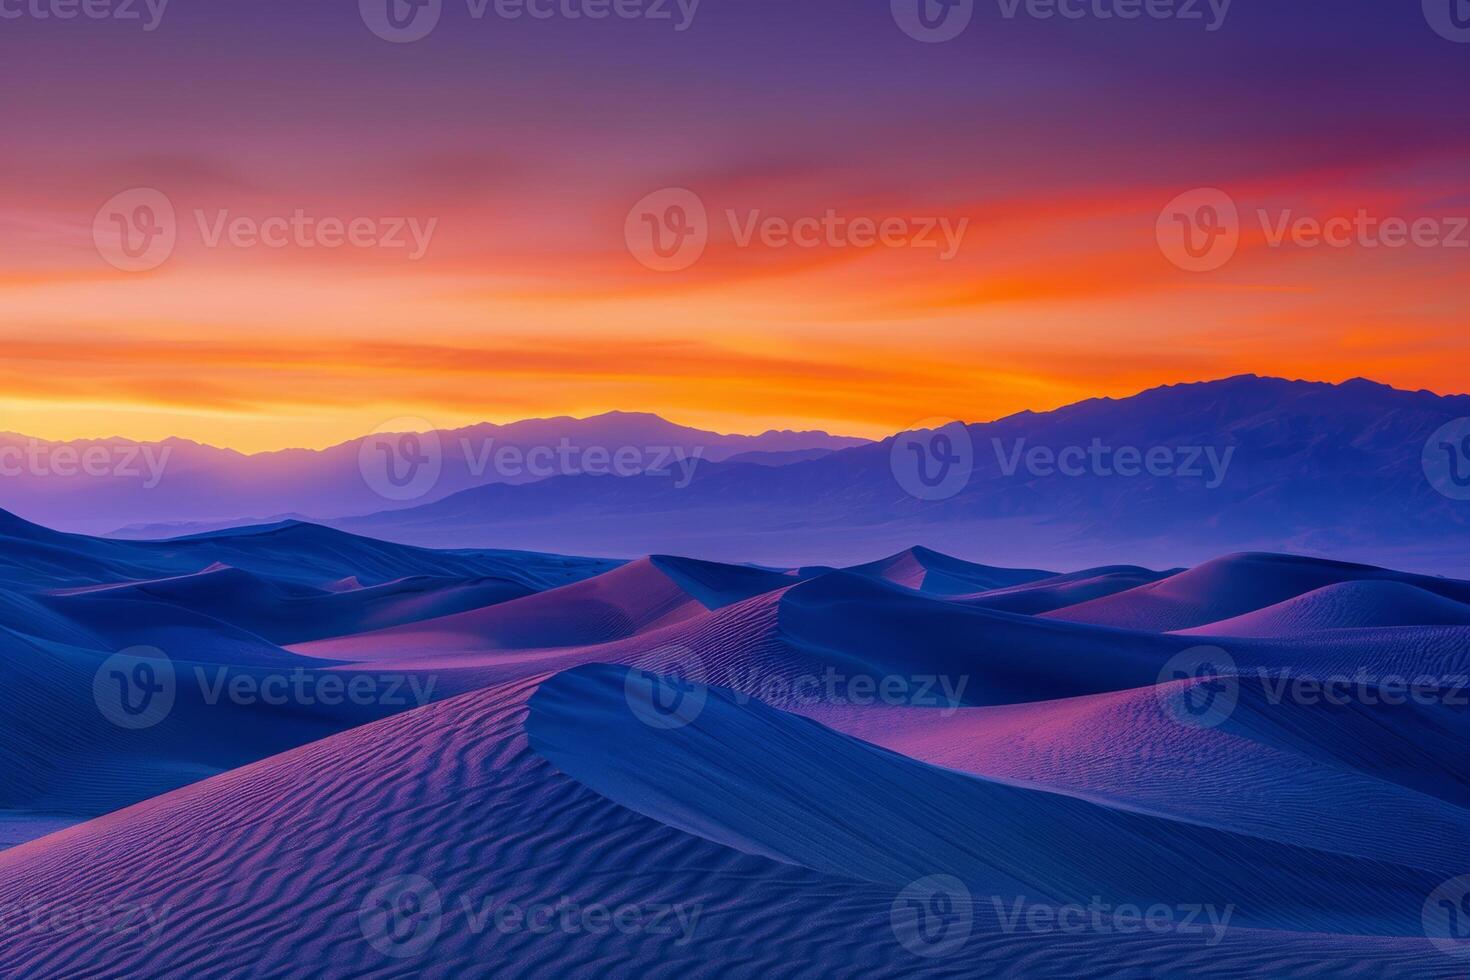 zonsopkomst verven ongebruikelijk fractal patronen Aan golvend woestijn zand duinen met een levendig oranje en Purper helling lucht net zo backdrop foto